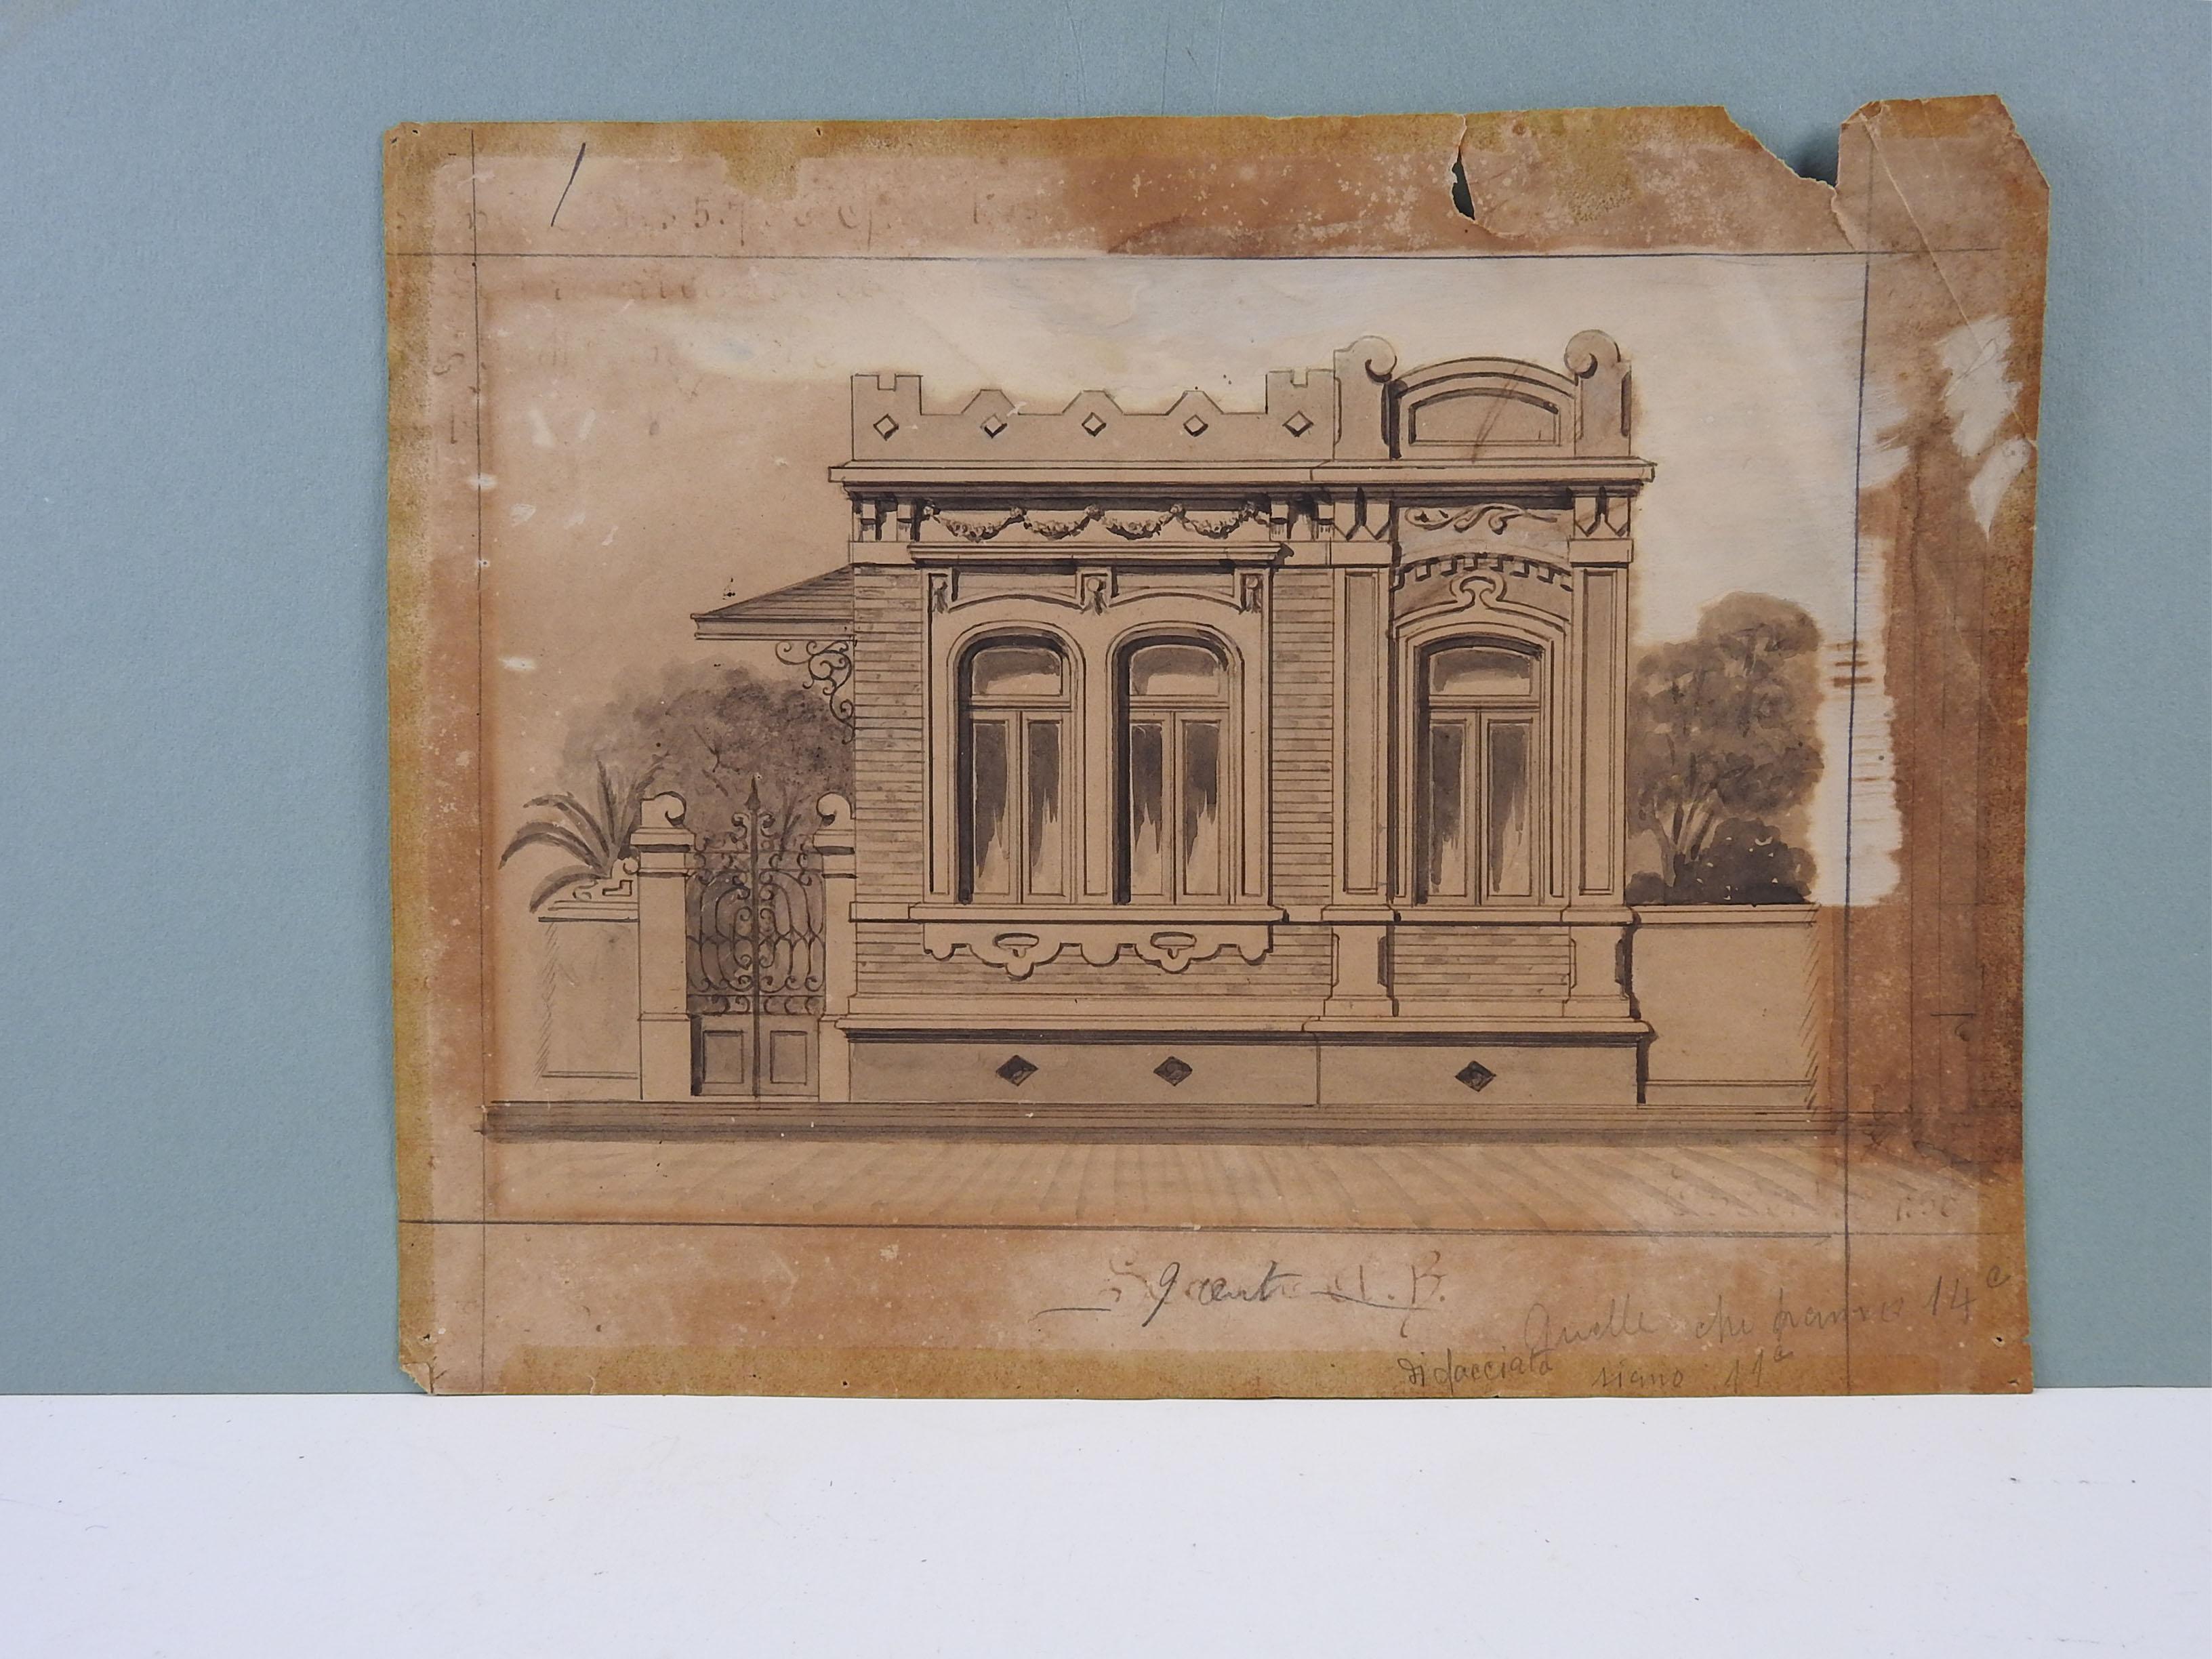 Architekturdarstellung in Aquarell, Gouache und Bleistift auf Papier von Luiz Olivieri Italien/Brasilien, um 1900. Nicht signiert. Ungerahmt, altersbedingt gebräunt, Randverluste.